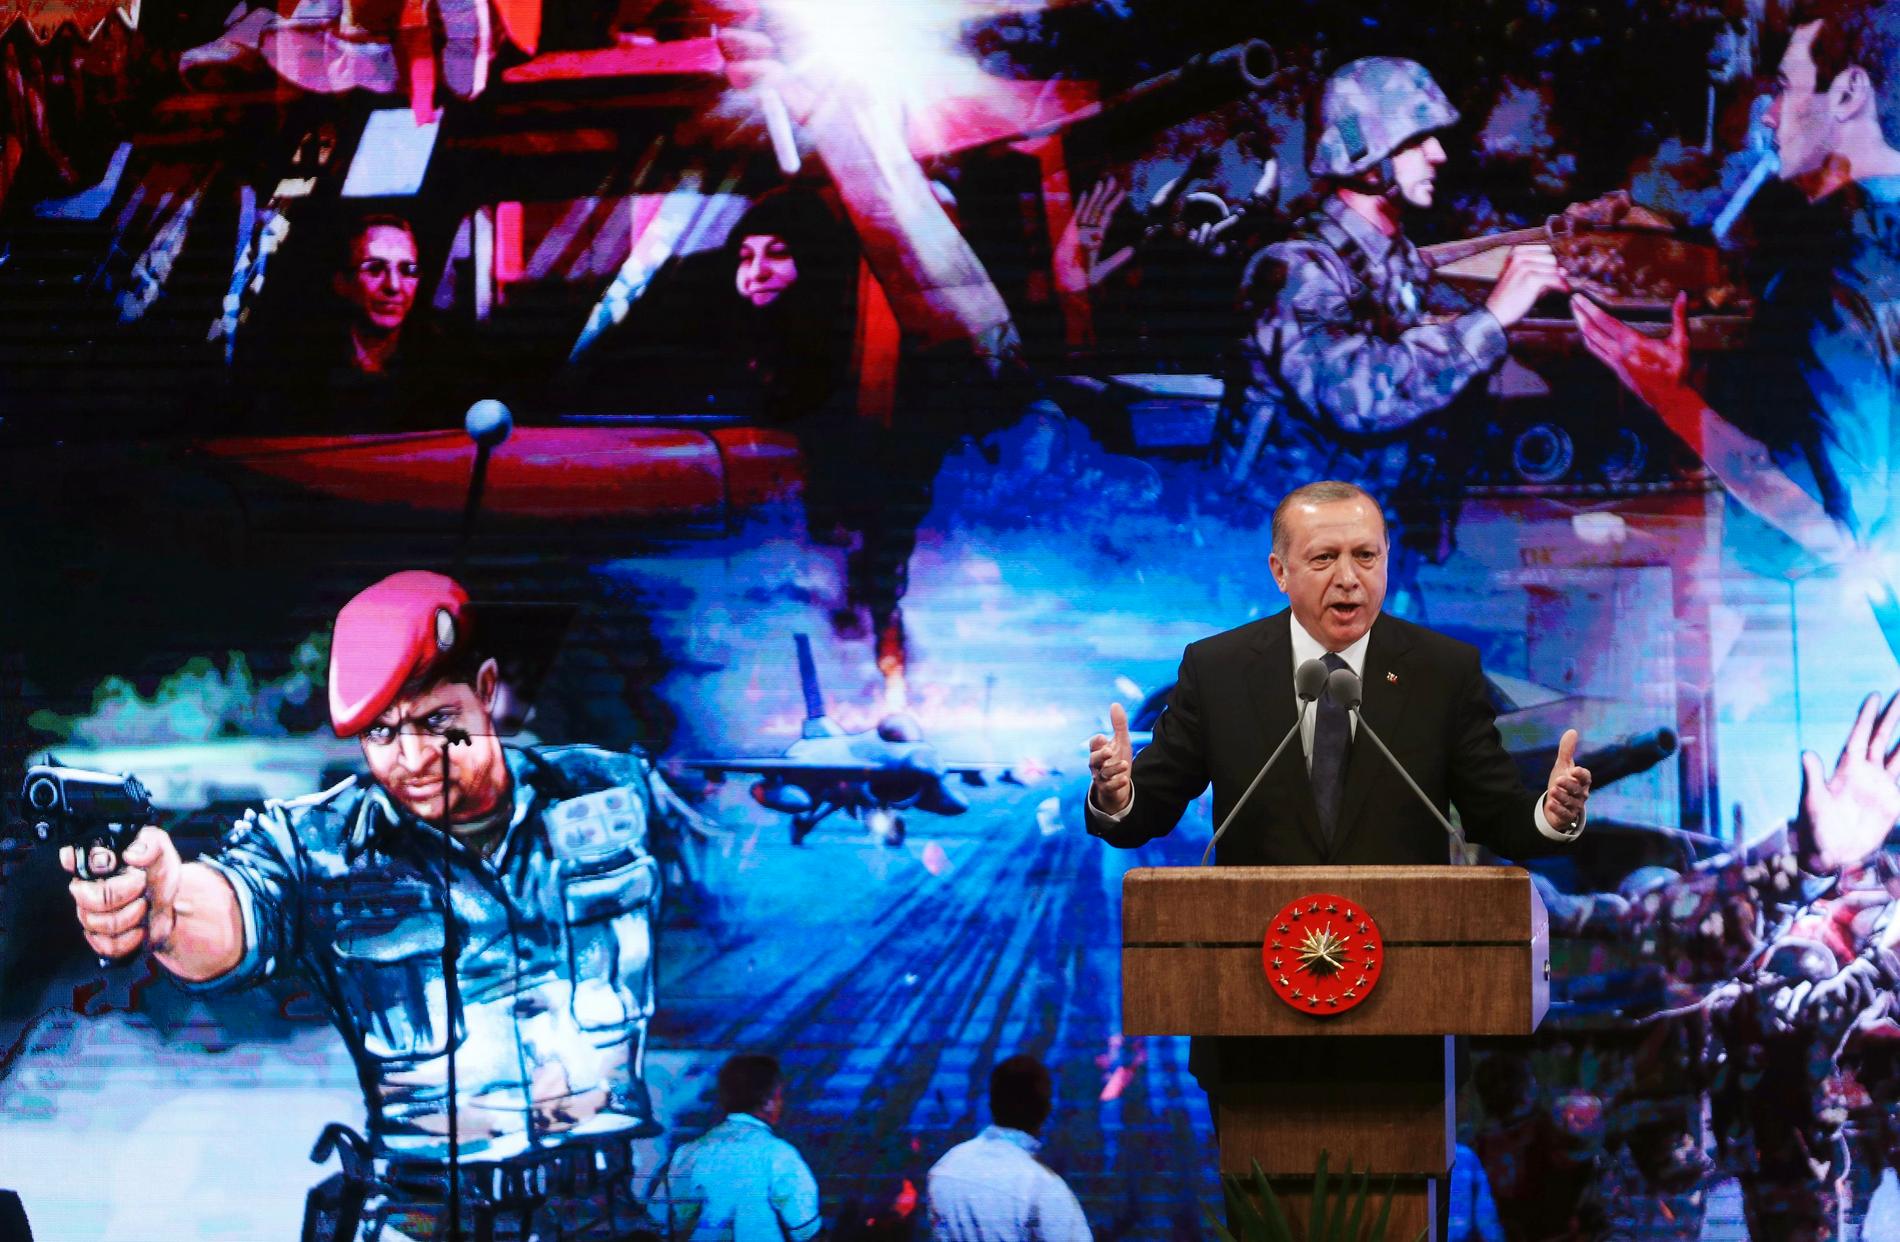 Turkiets president Recep Tayyip Erdogan håller ett tal på en ceremoni i Ankara den 13 juli, knappt ett år efter den misslyckade statskuppen.